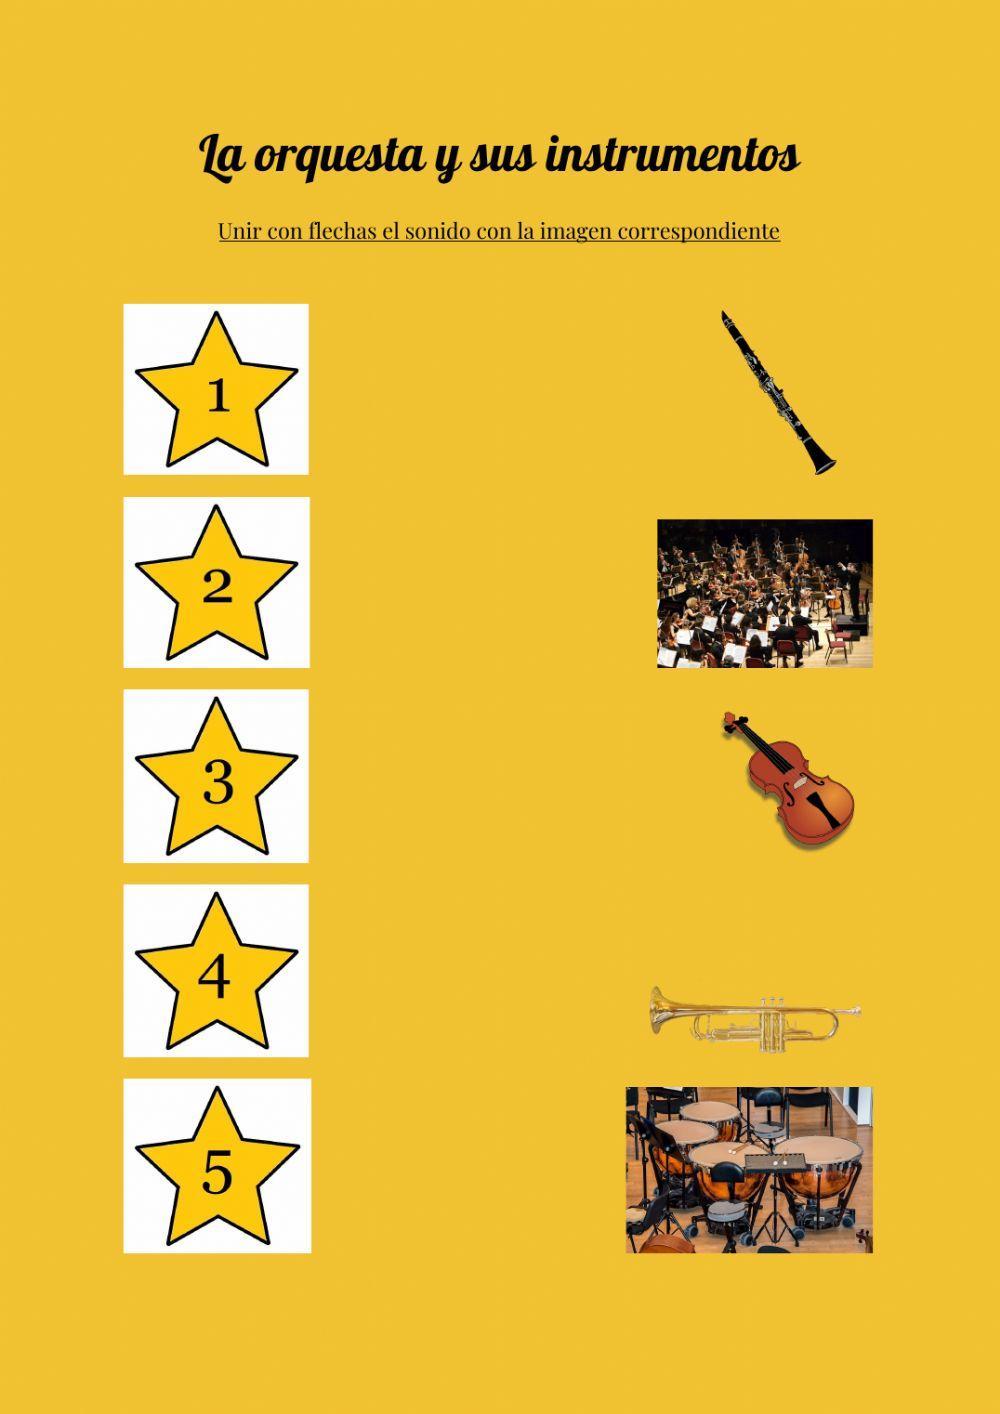 La orquesta y sus instrumentos